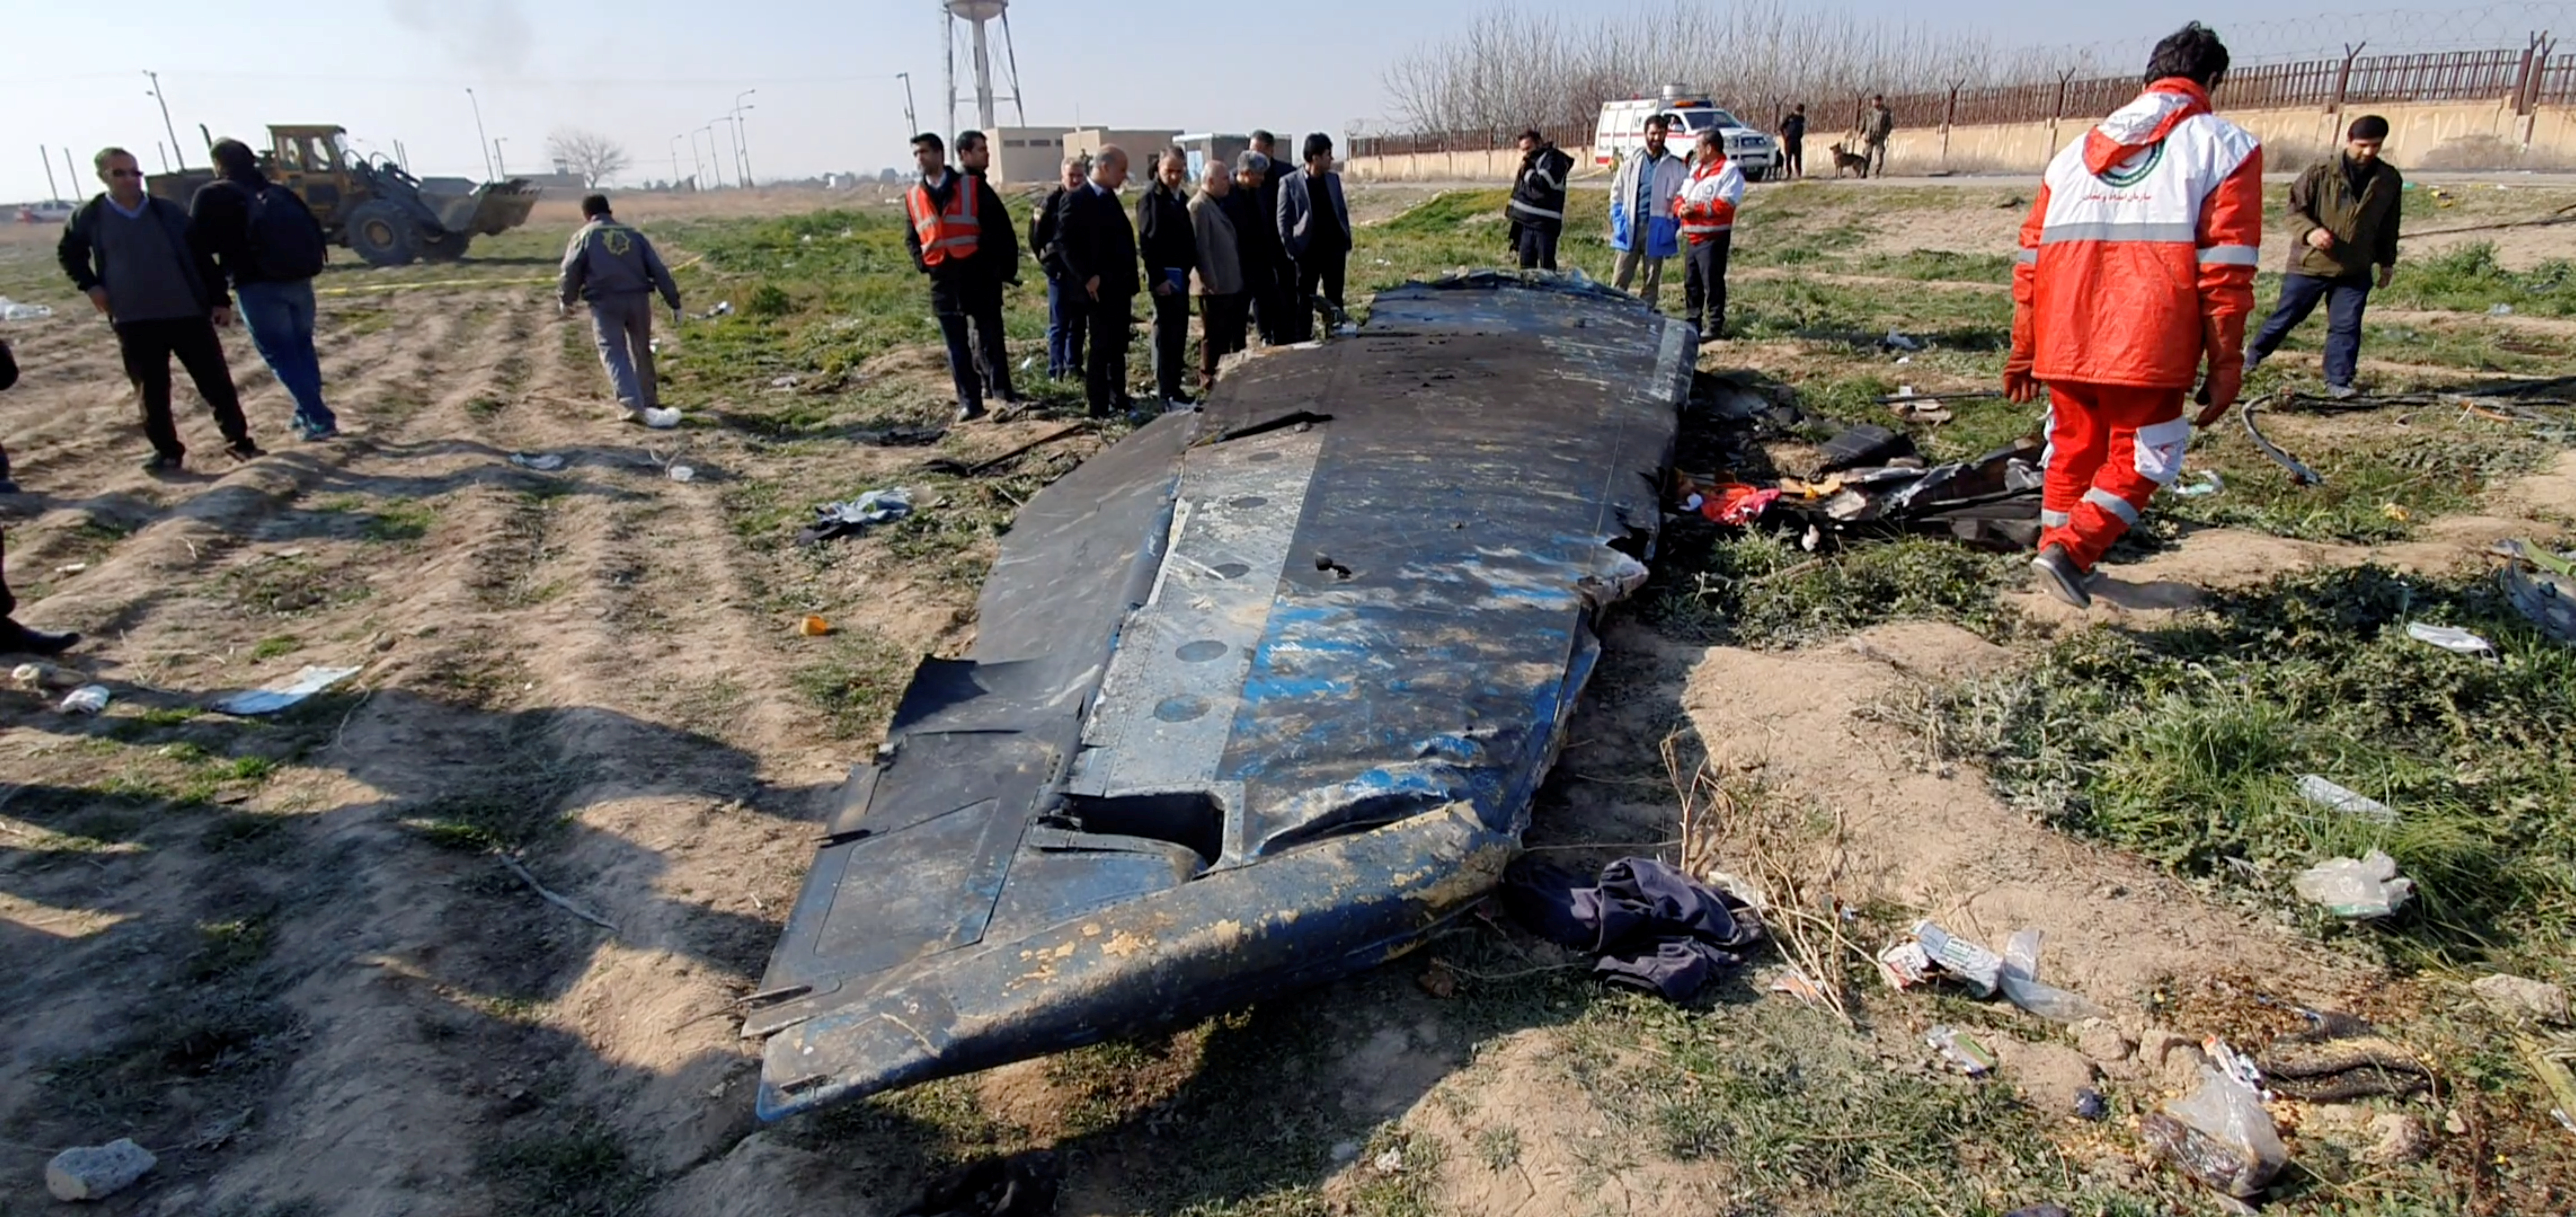 FOTO DE ARCHIVO: Vista general de los escombros del avión Boeing 737-800 de Ukraine International Airlines, vuelo PS752 que se estrelló después de despegar del aeropuerto iraní Imam Khomeini, en las afueras de Teherán, Irán, el 8 de enero de 2020. captura obtenida de un video de las redes sociales a través de REUTERS